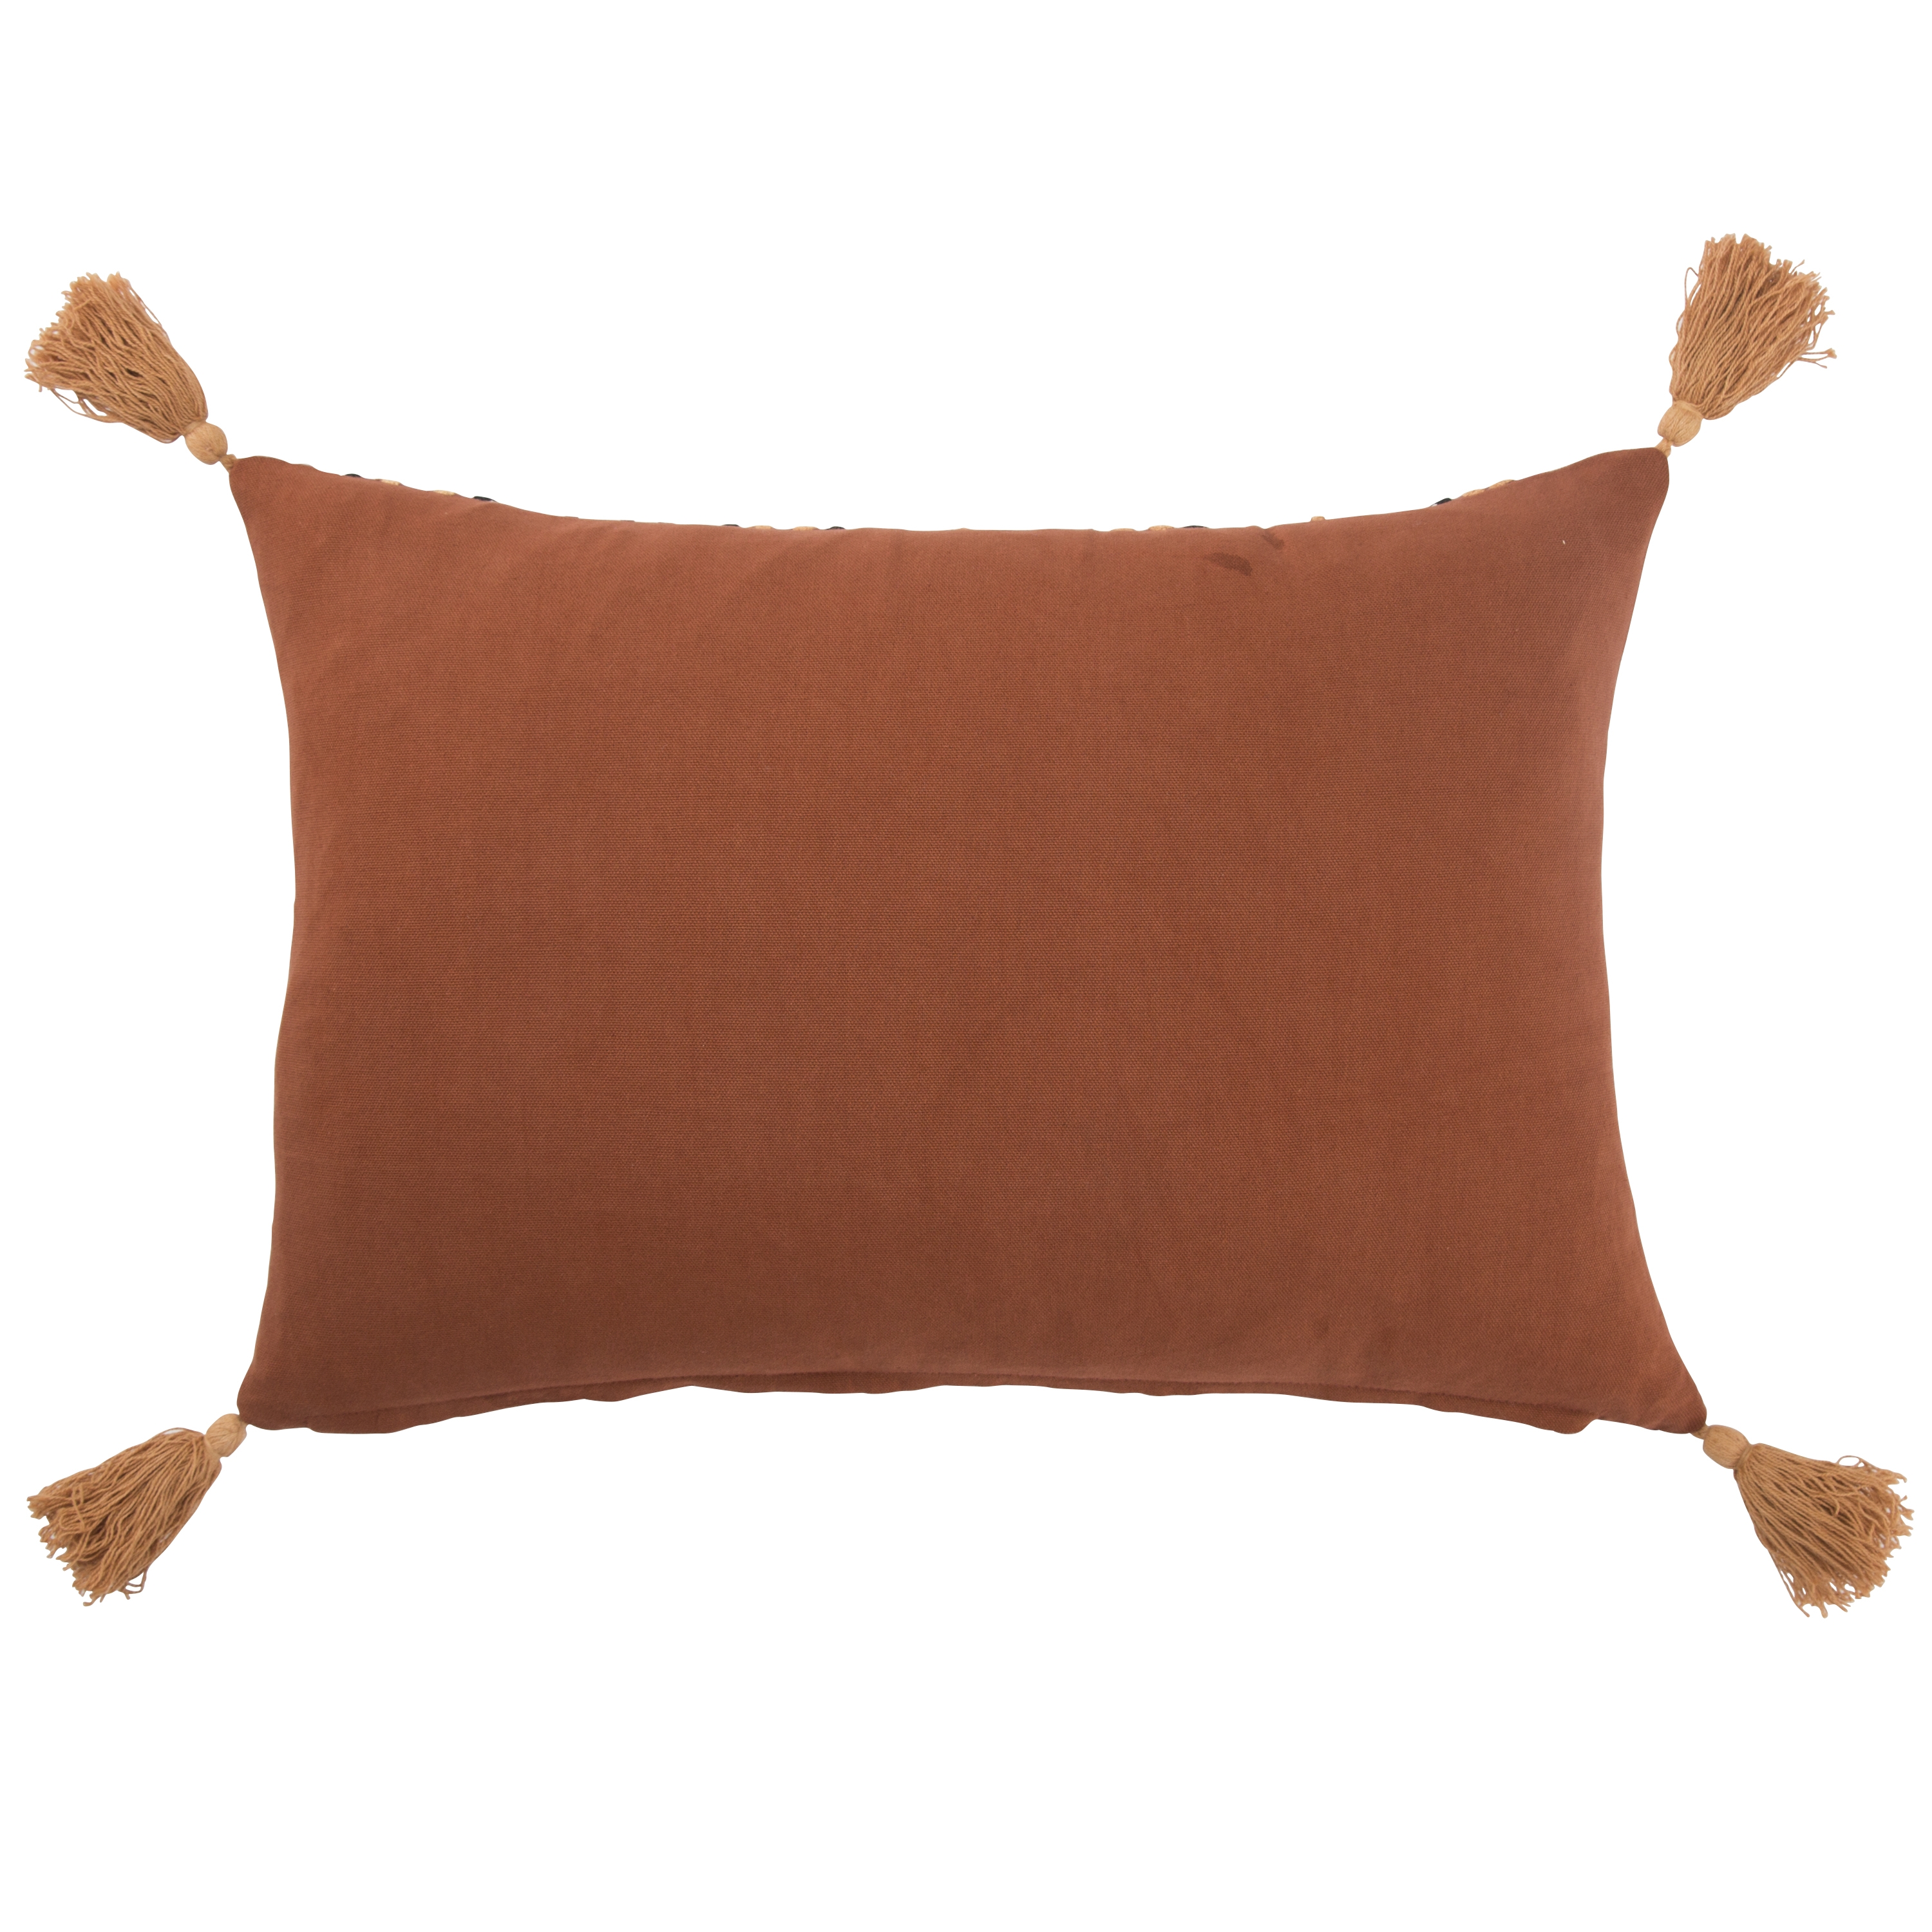 Design (US) Orange 14"X20" Pillow - Image 1